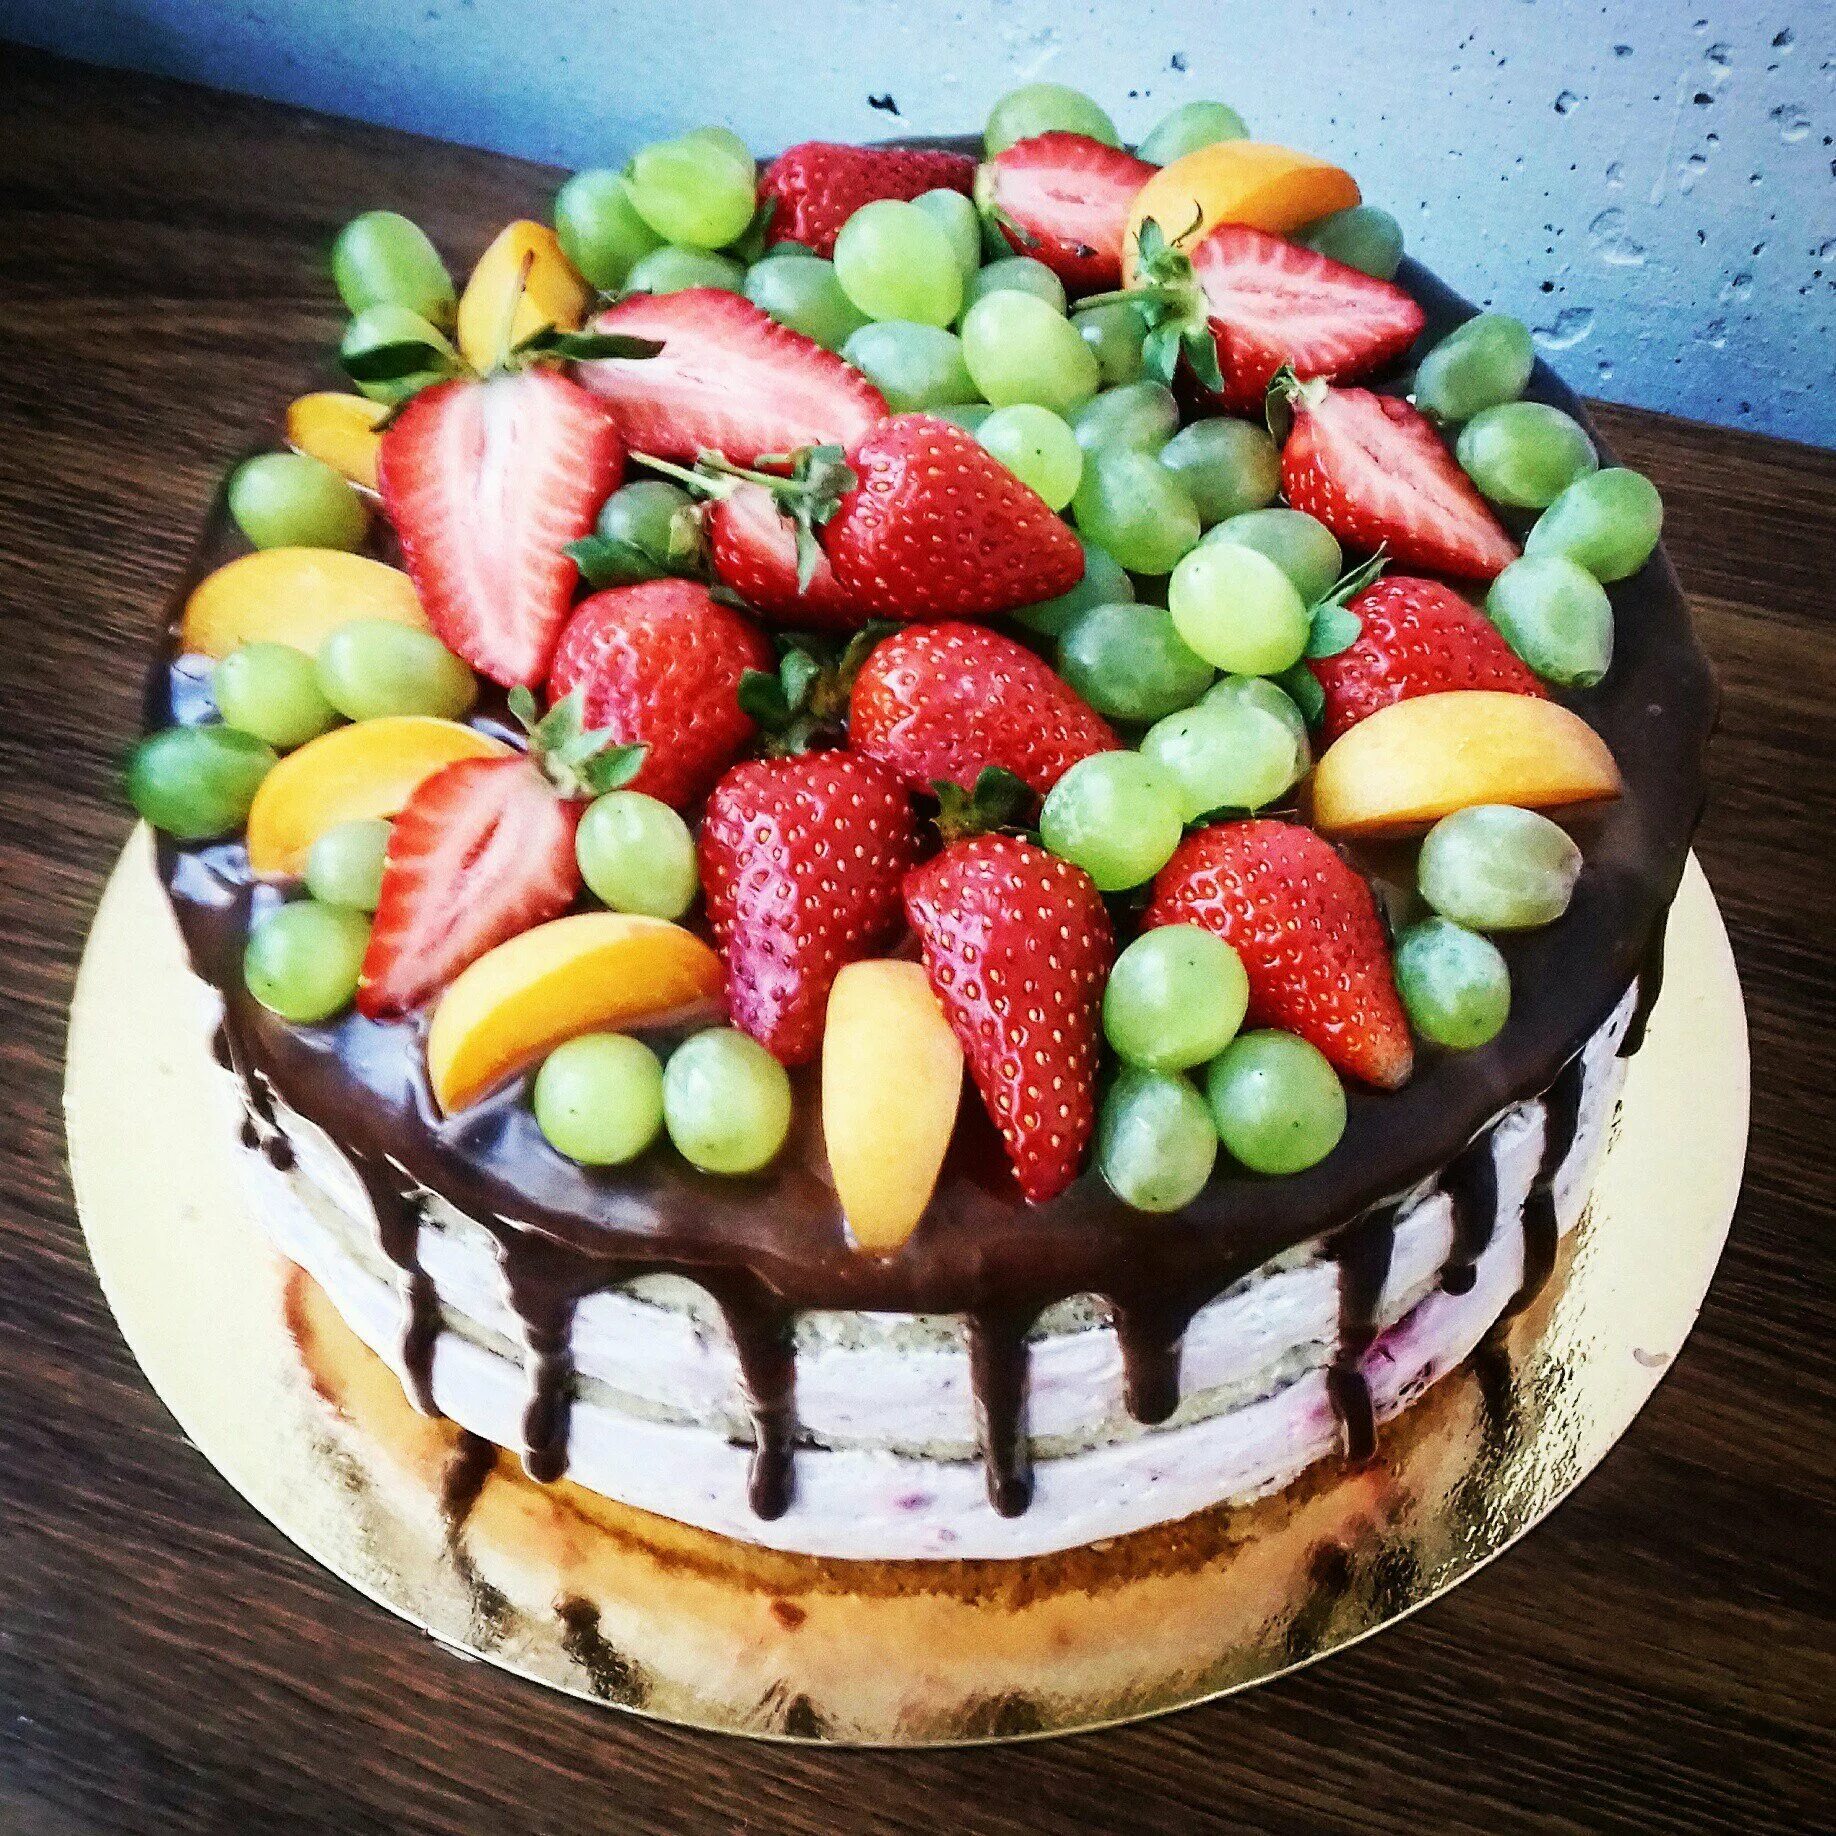 Красиво украшенные торты фото. Торт украшенный фруктами. Укашения тртиков фруктаии. Украшение торт а фрутками. Украшение торта фруктами и ягодами.